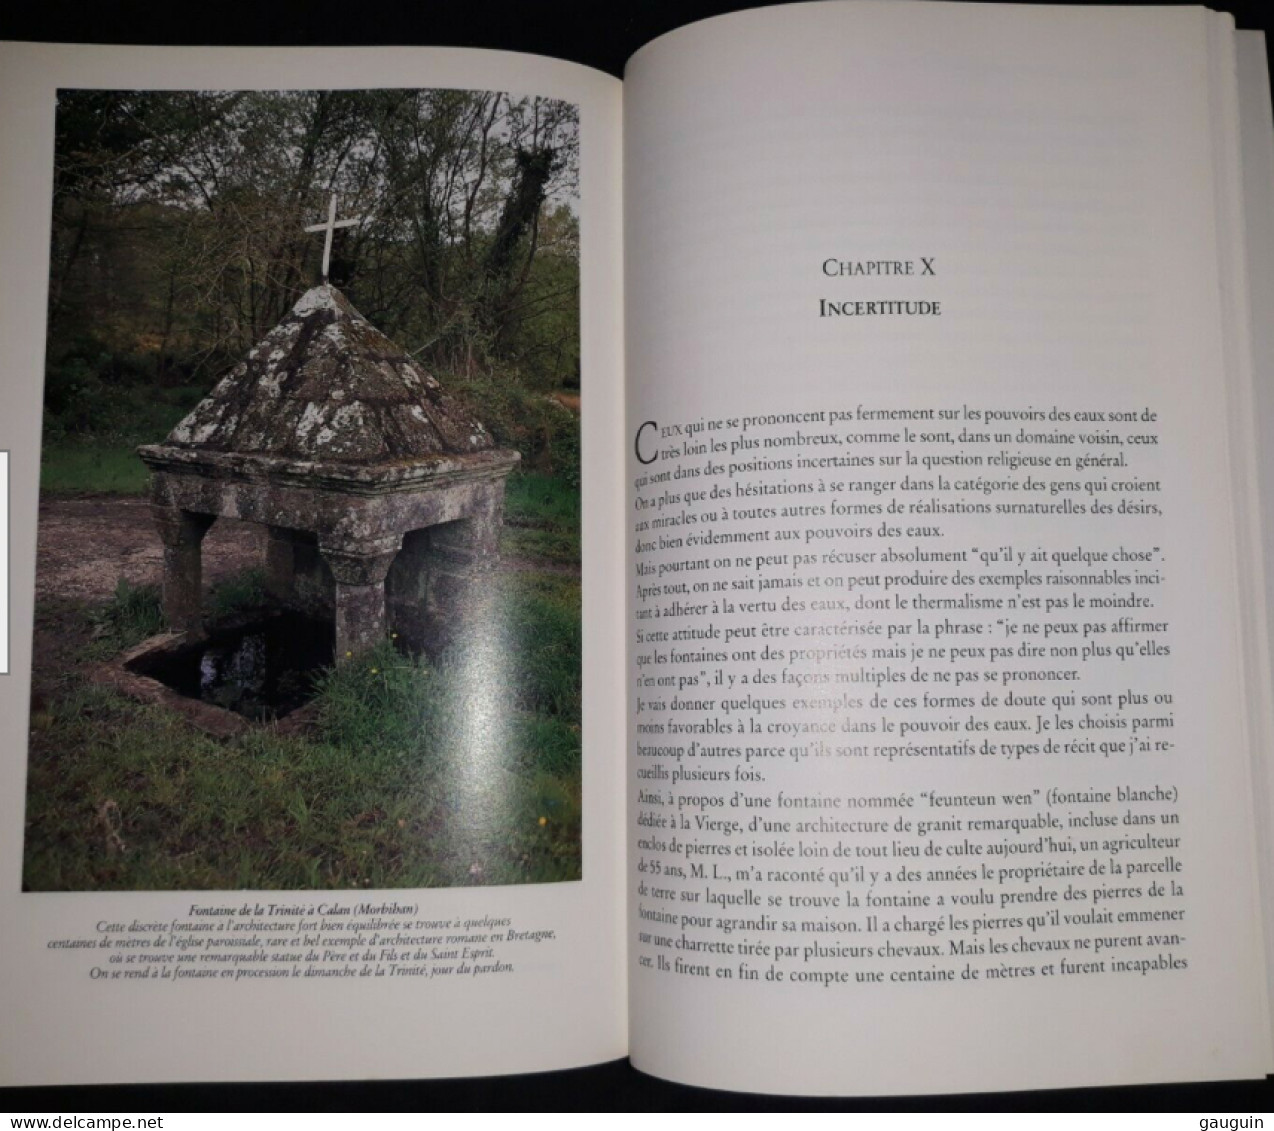 BRETAGNE - "Croyances aux Fontaines en Bretagne " de Sylvette DENÈFLE - Edisud /1994 / 208 pages.